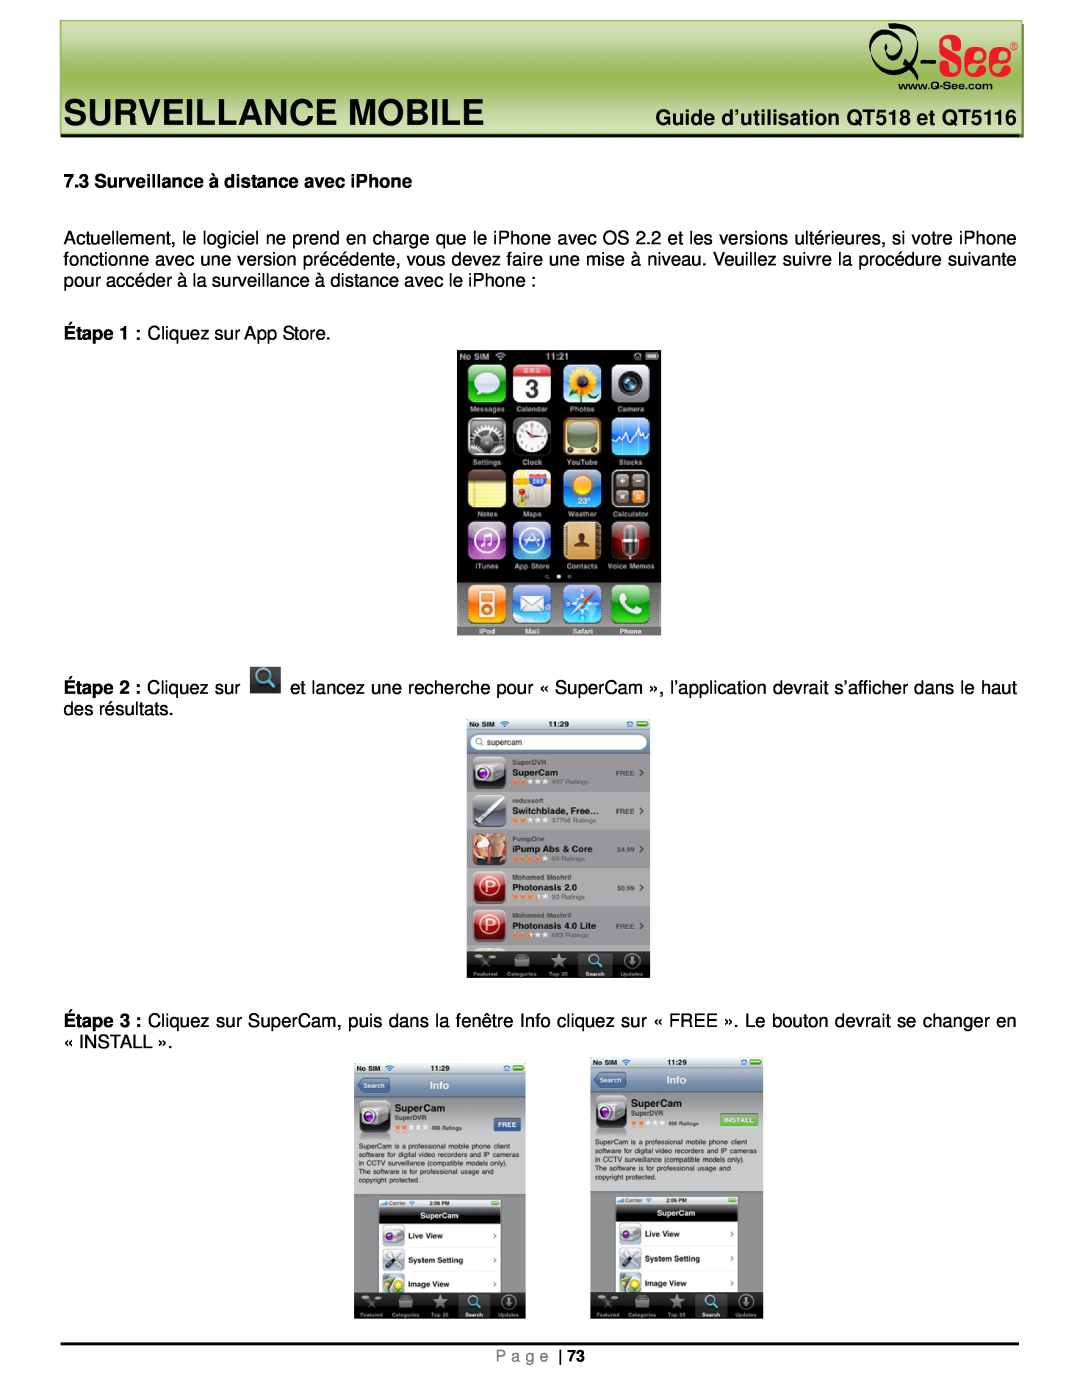 Q-See manual Surveillance Mobile, Guide d’utilisation QT518 et QT5116, Surveillance à distance avec iPhone 